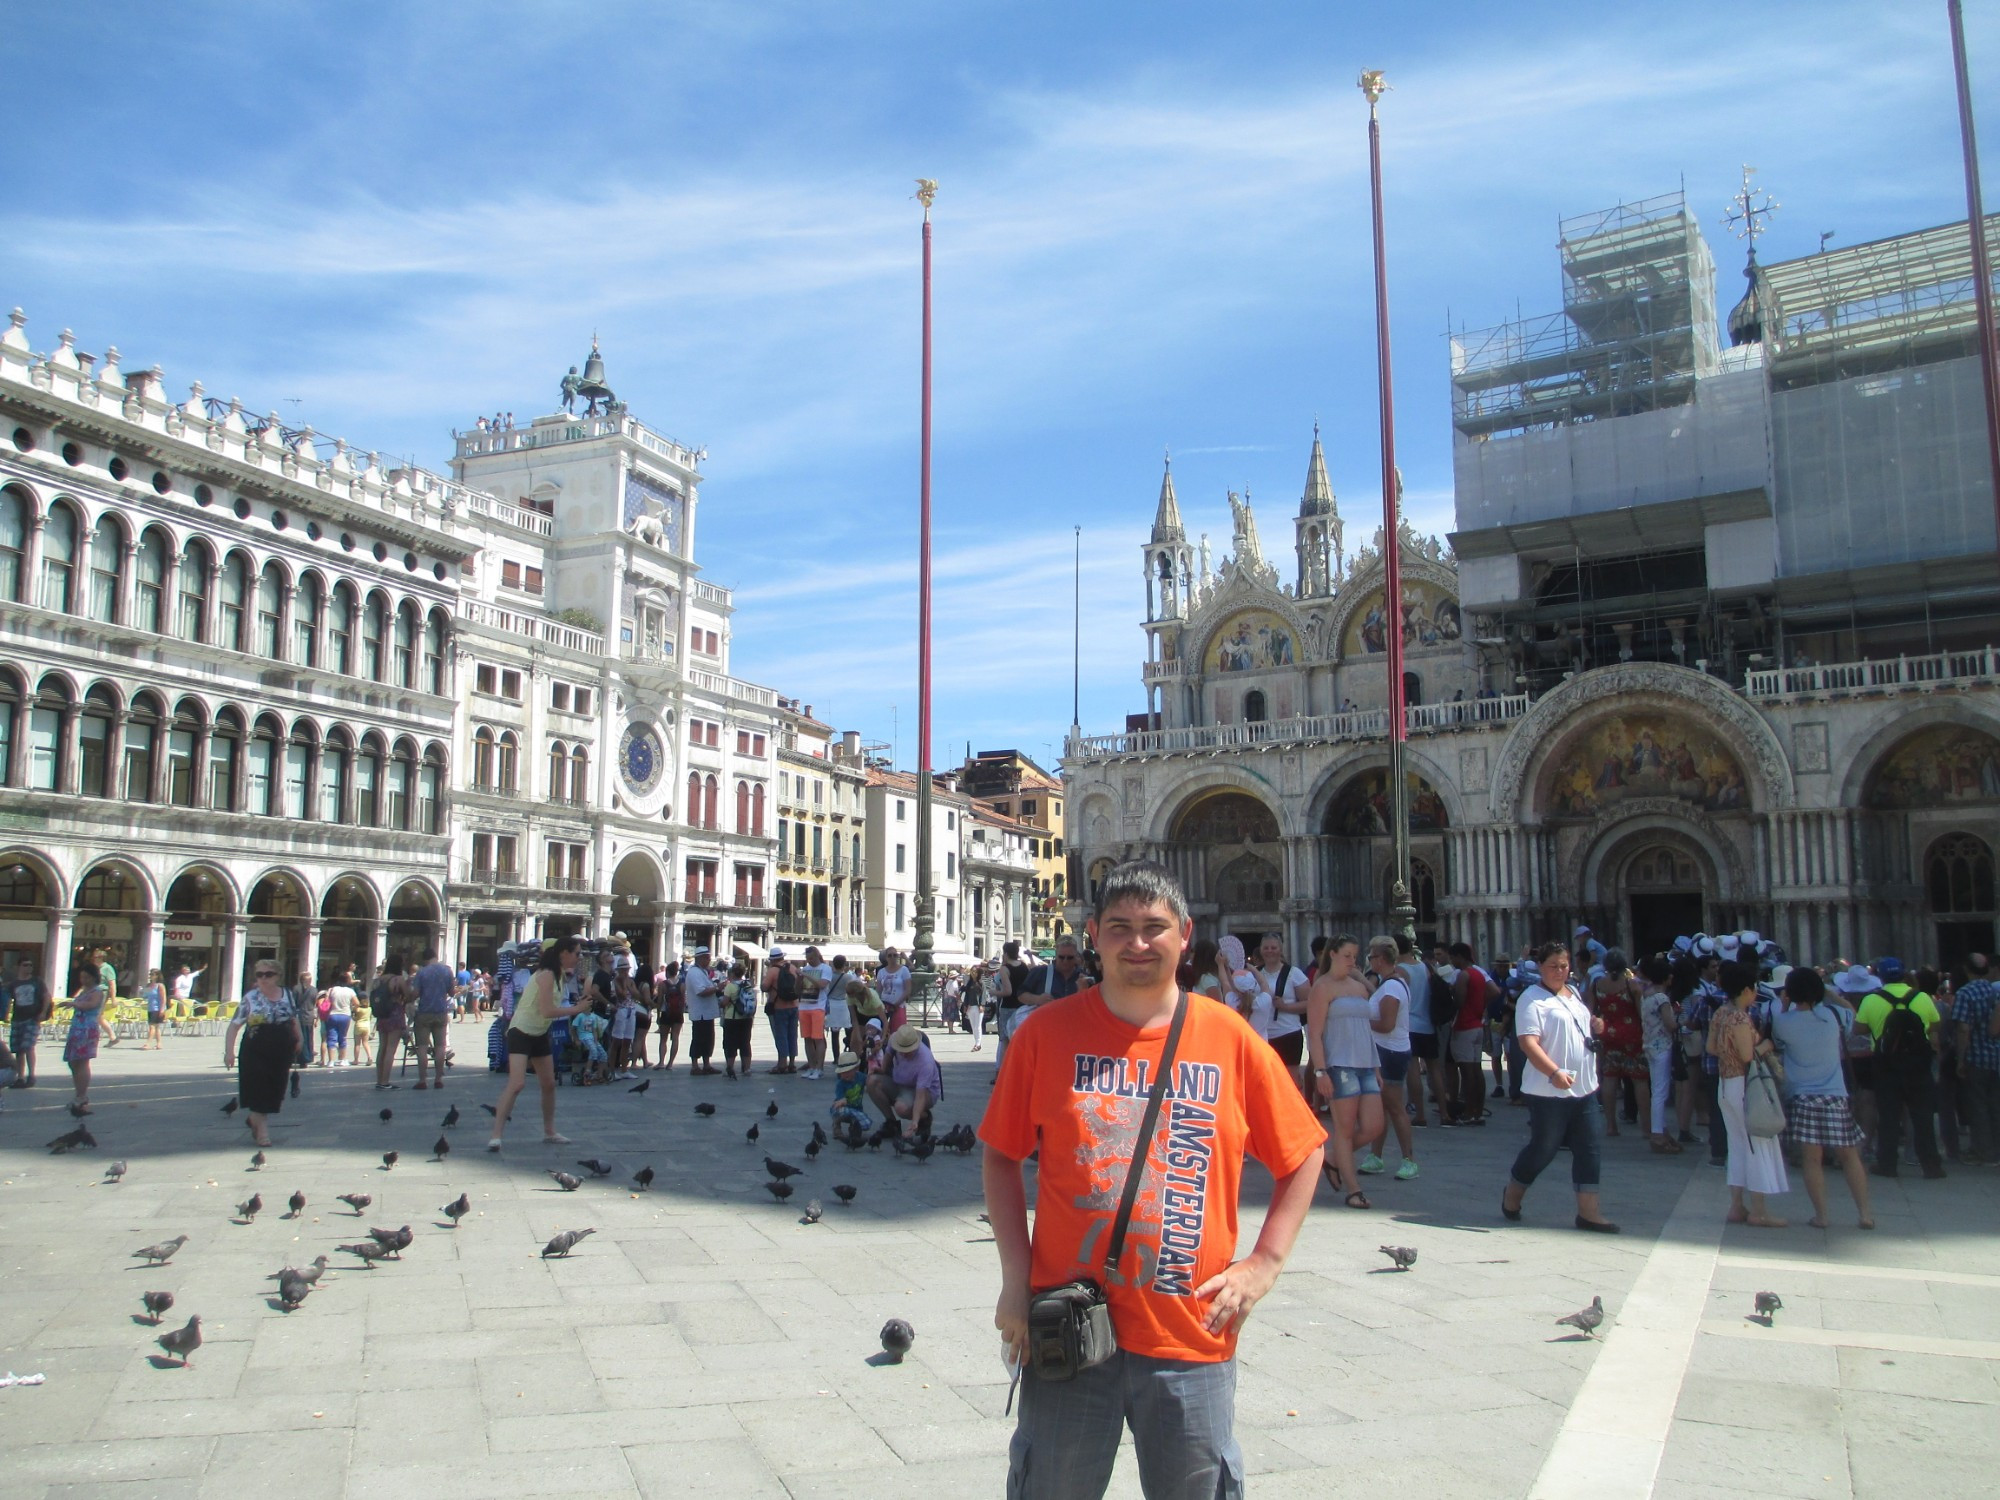 Венеция. Я на площади Сан-Марко. (16.07.2014)